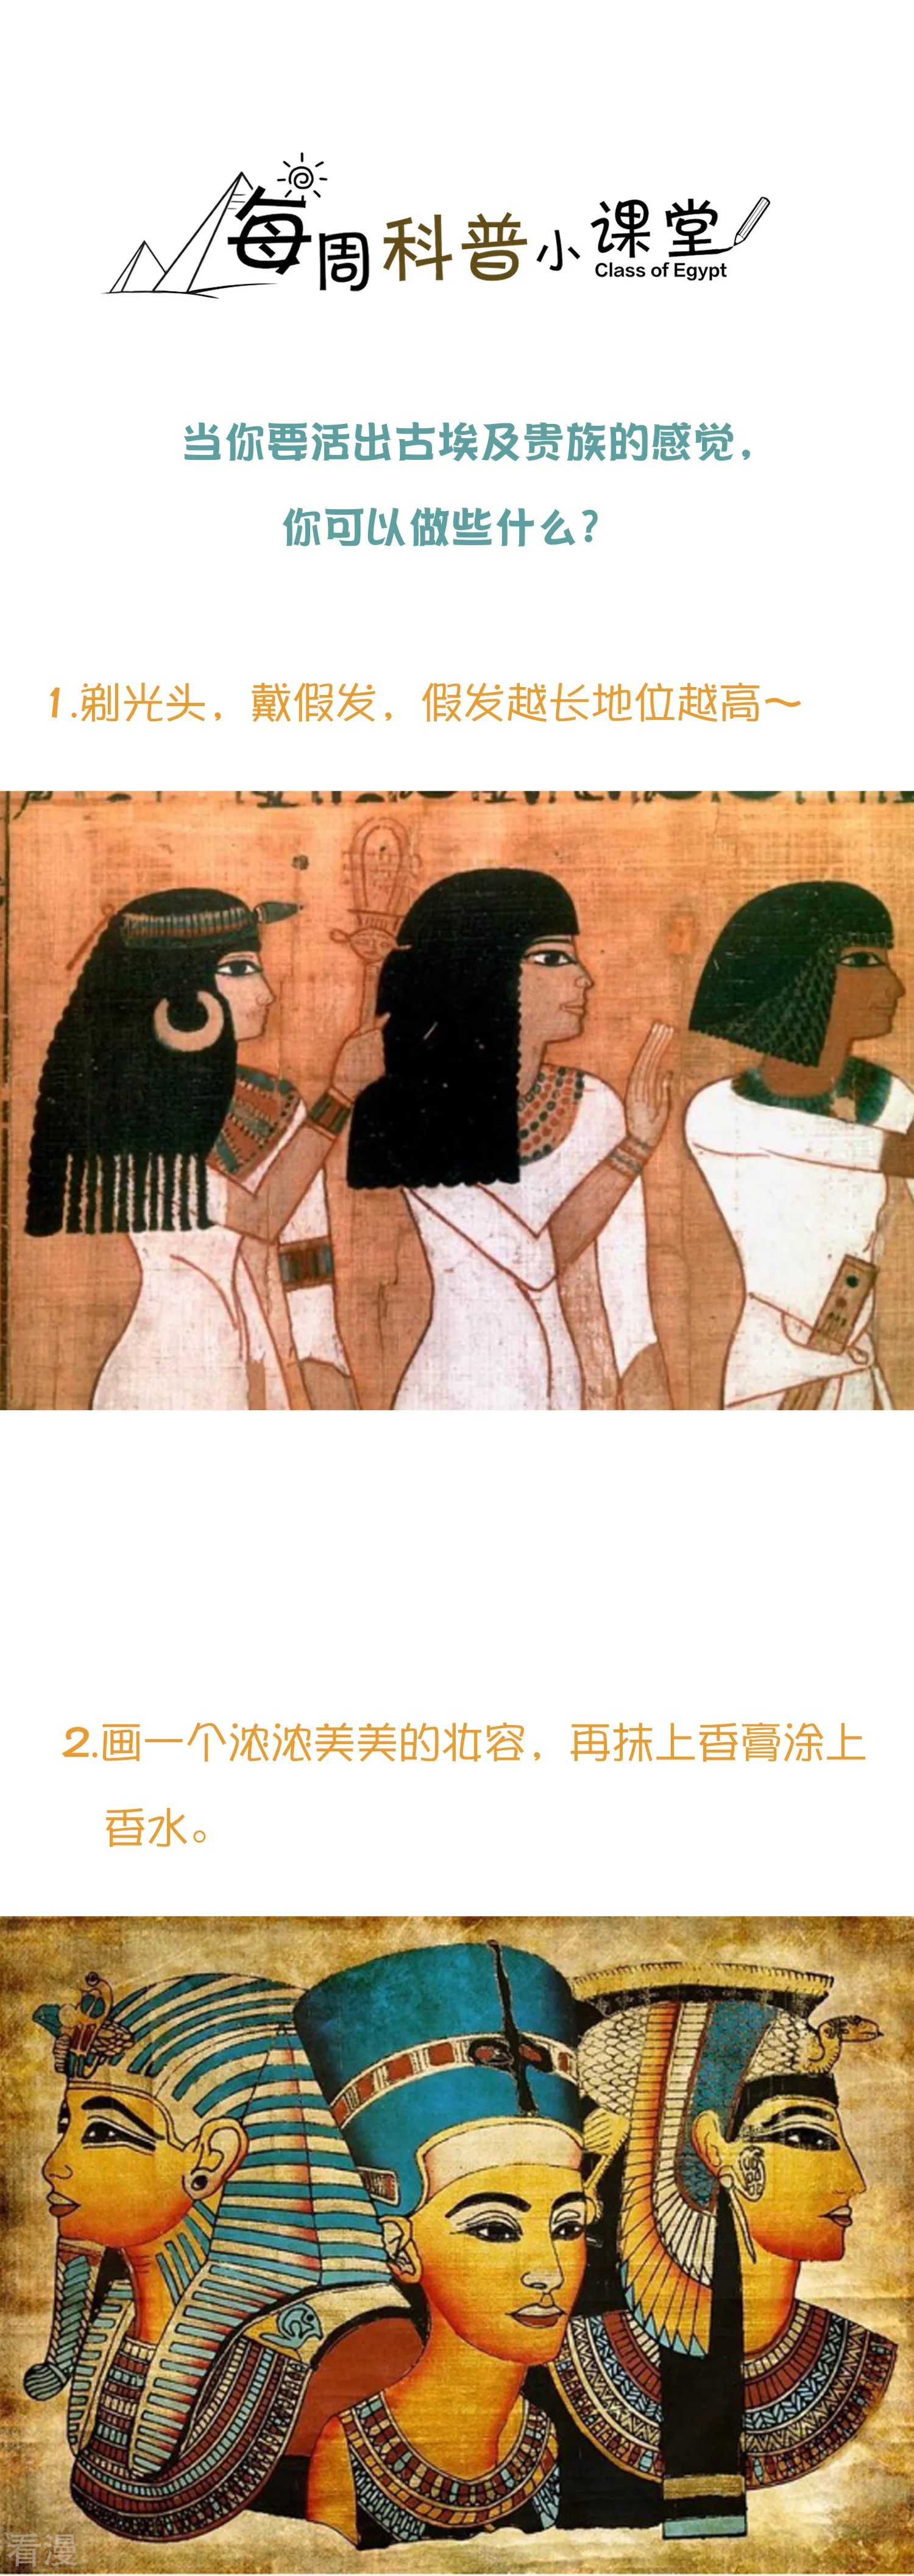 王的第一寵後 - 王的茶話會32 穿越埃及當貴族 - 1